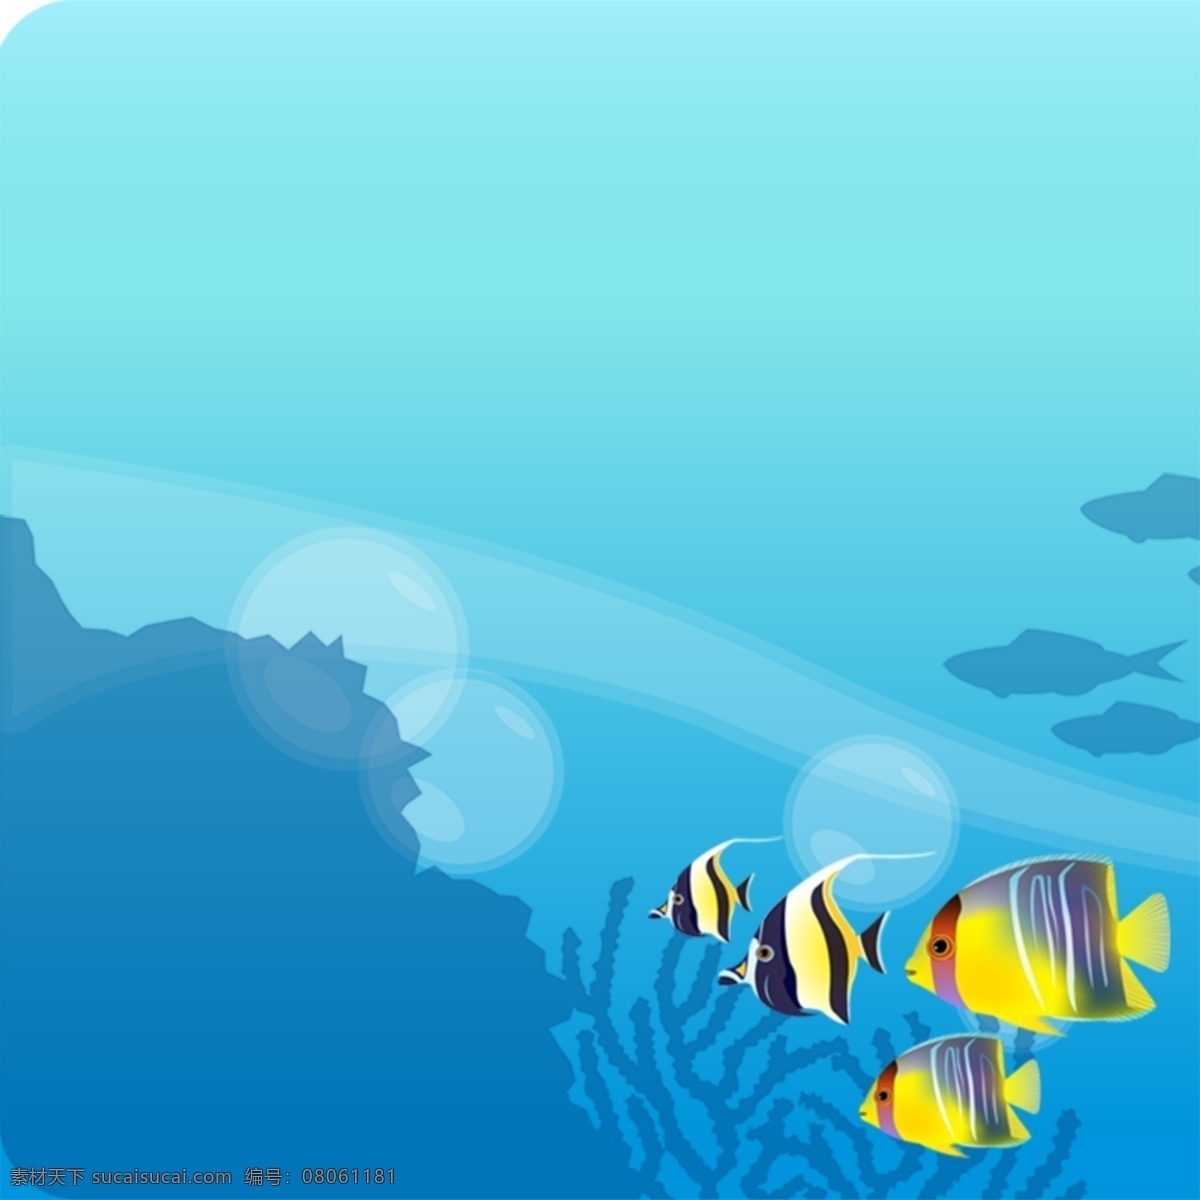 海底世界背景 海洋 鱼 海底 手绘背景 卡通背景 清新 青色 天蓝色